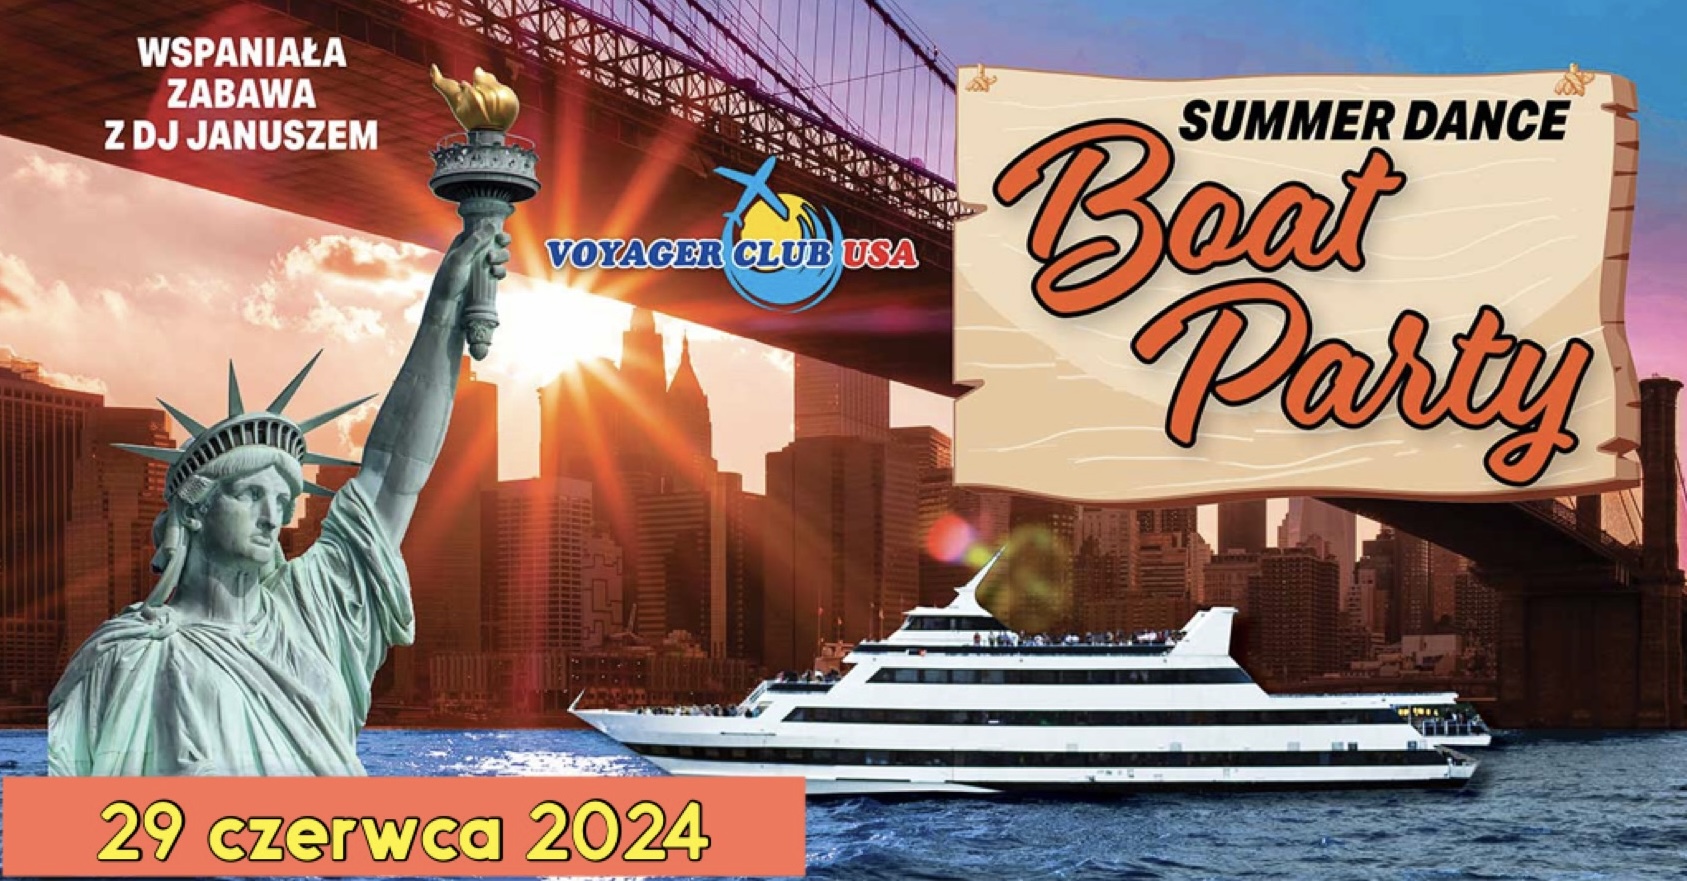 Agencja Voyager Club USA w Nowym Jorku zaprasza na Summer Dance Boat Party